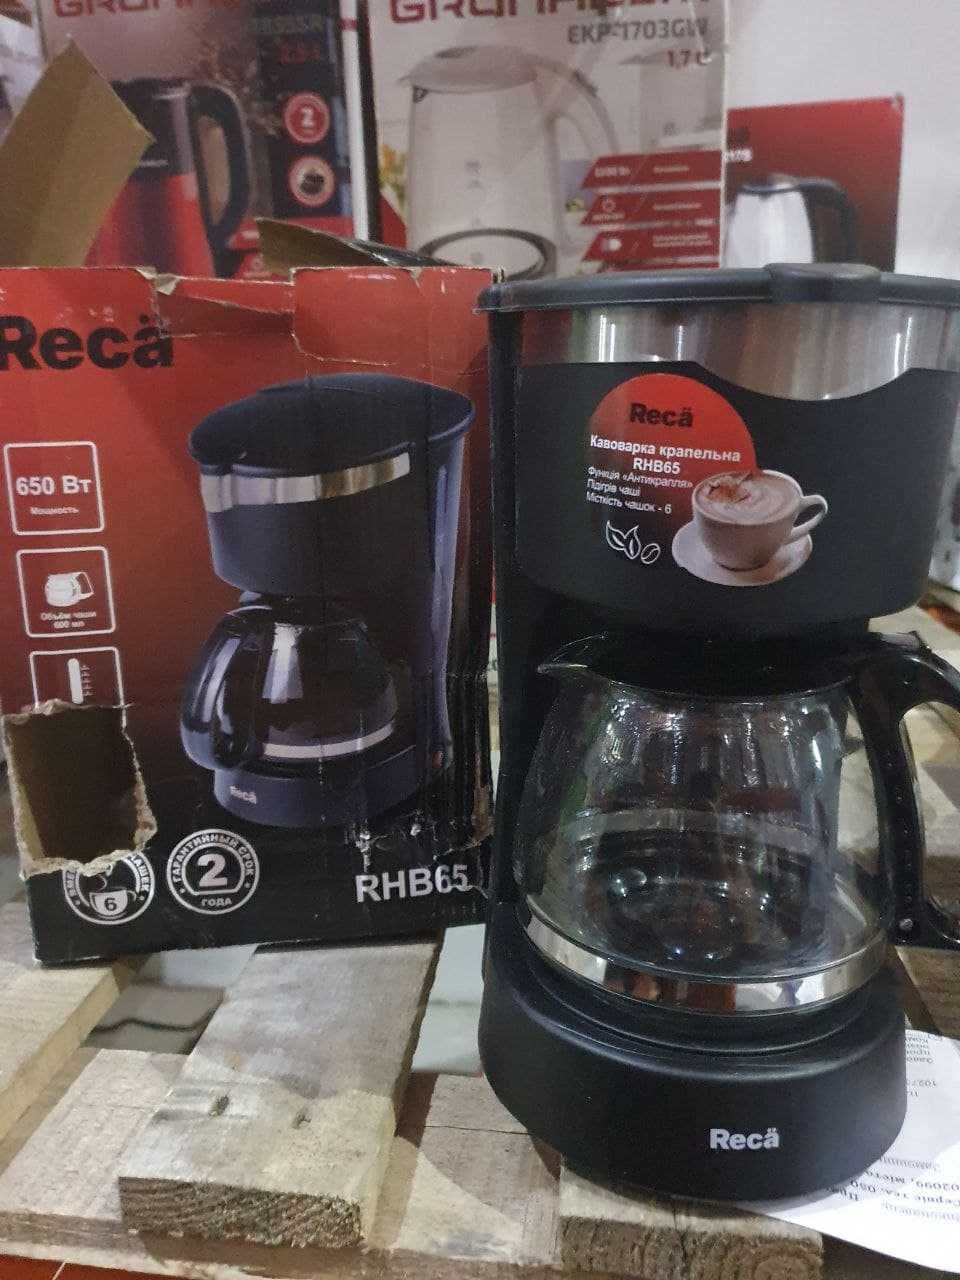 Капельная кофеварка RECA RHB65, 0,6л. РАСПРОДАЖА